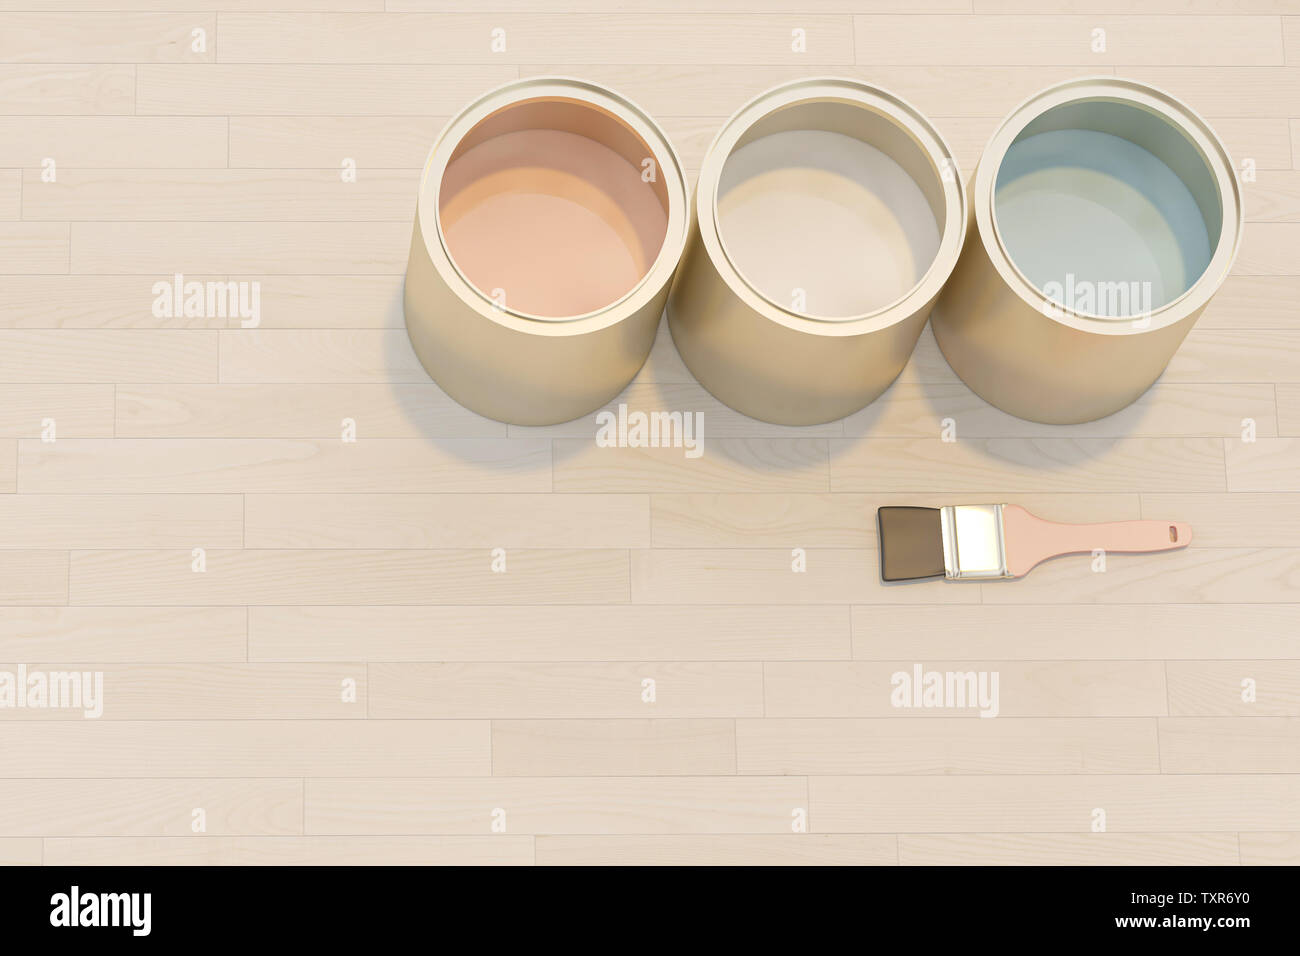 Le rendu d'images 3D d'une série de pots de peinture de couleur sur un fond de bois. Image Style de mise à plat Banque D'Images